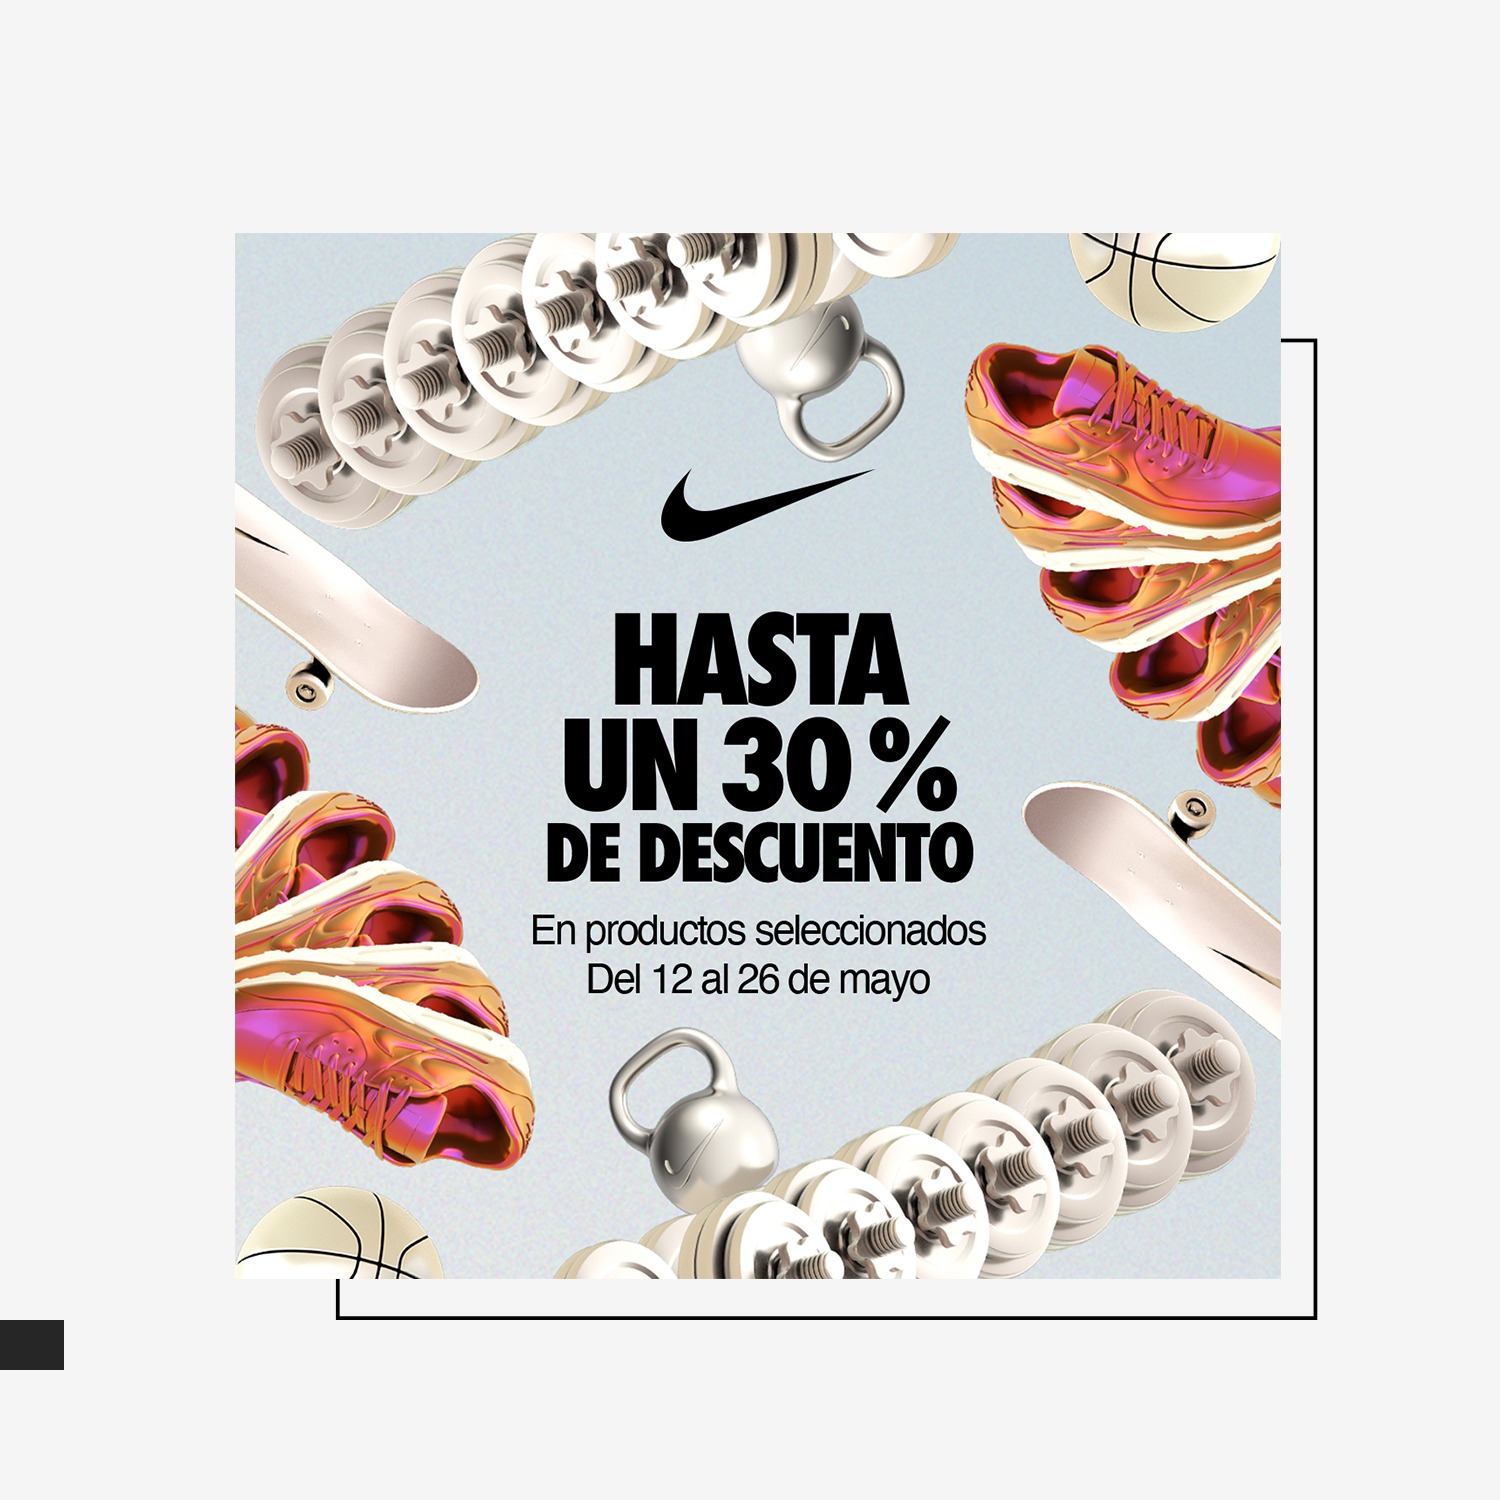 Descarte Hito Loza de barro La Noria Outlet on Twitter: "🔊Promoción especial de Nike Factory en La Noria  Outlet: hasta un 30% de descuento en productos seleccionados. *Válido del  12 al 26 de mayo de 2022 Más